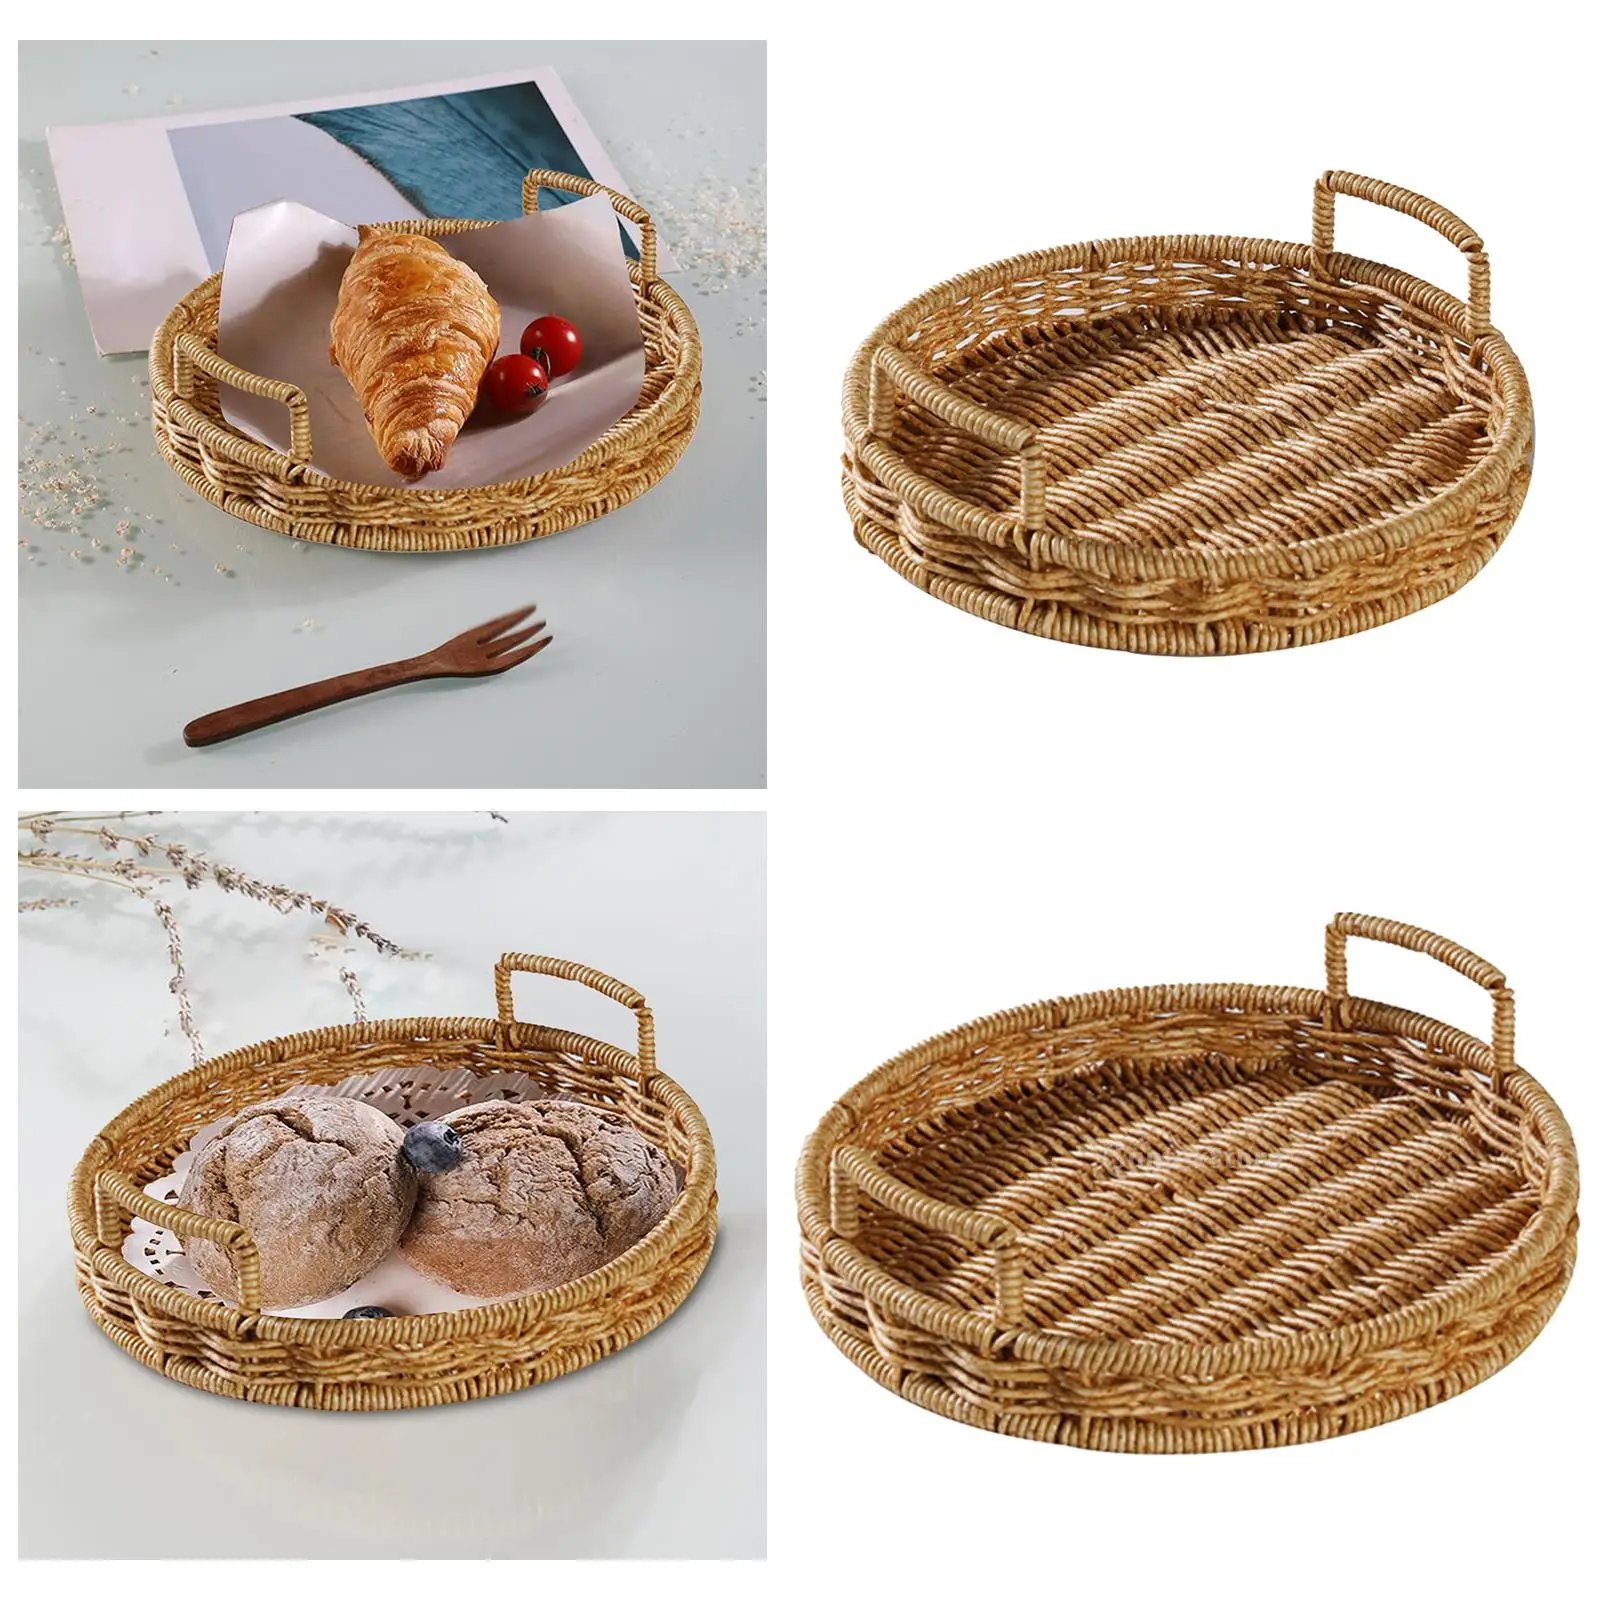 Wicker Bread Tray Wicker Basket Bread Fruit Breakfast Display Rattan Storage Tray for Tea Parties Snack Food Bread